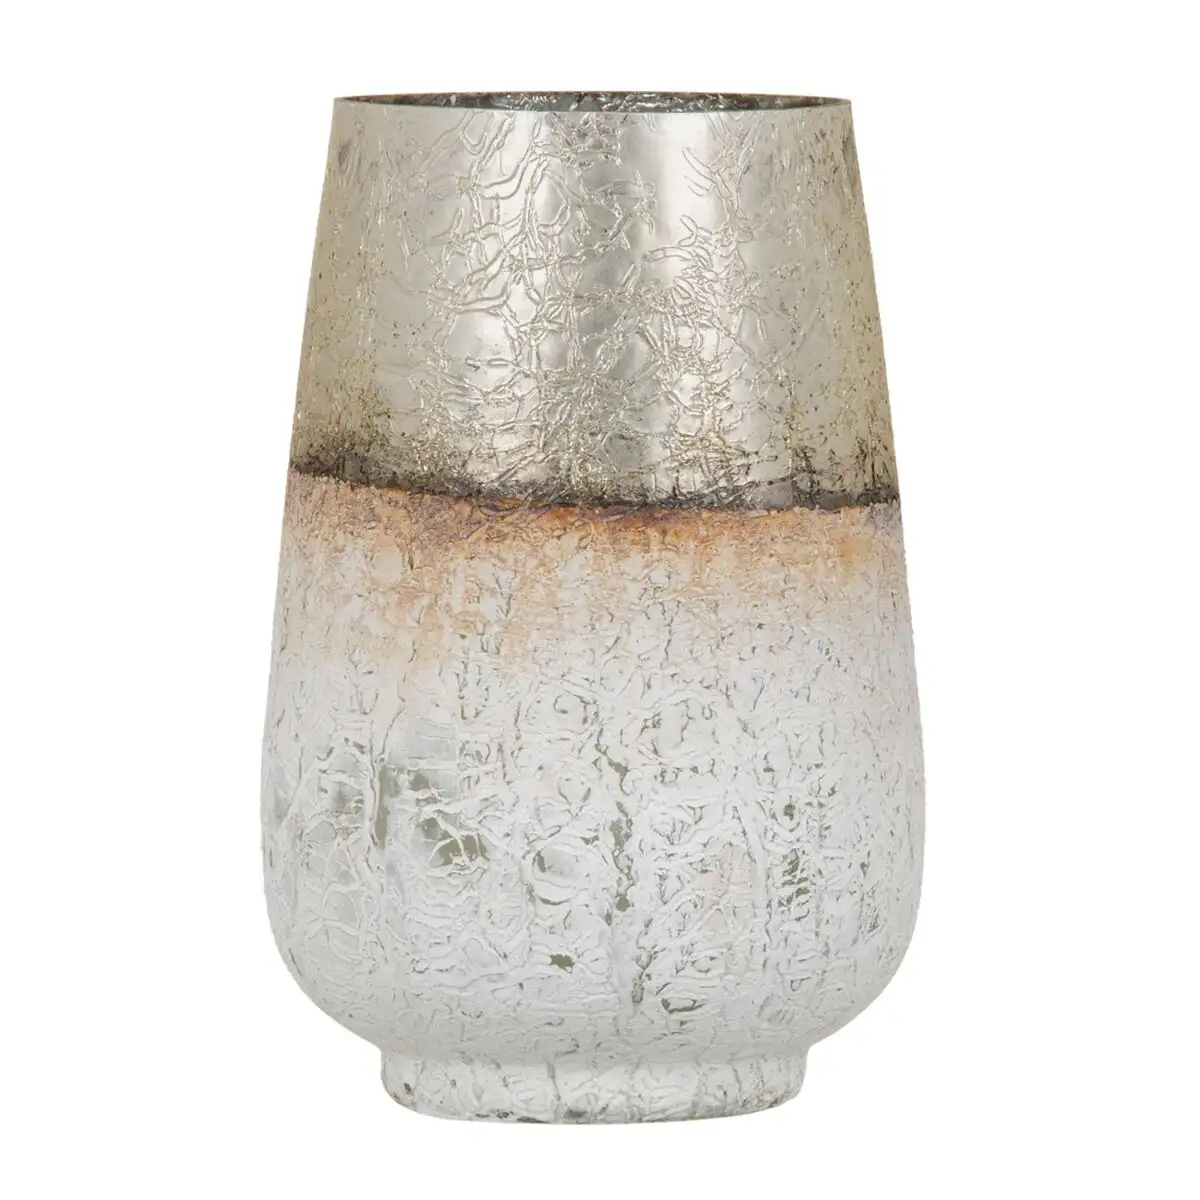 Vase verre dore blanc 17 x 17 x 25 cm_6653. DIAYTAR SENEGAL - Votre Oasis de Shopping en Ligne. Explorez notre boutique et découvrez des produits qui ajoutent une touche de magie à votre quotidien.